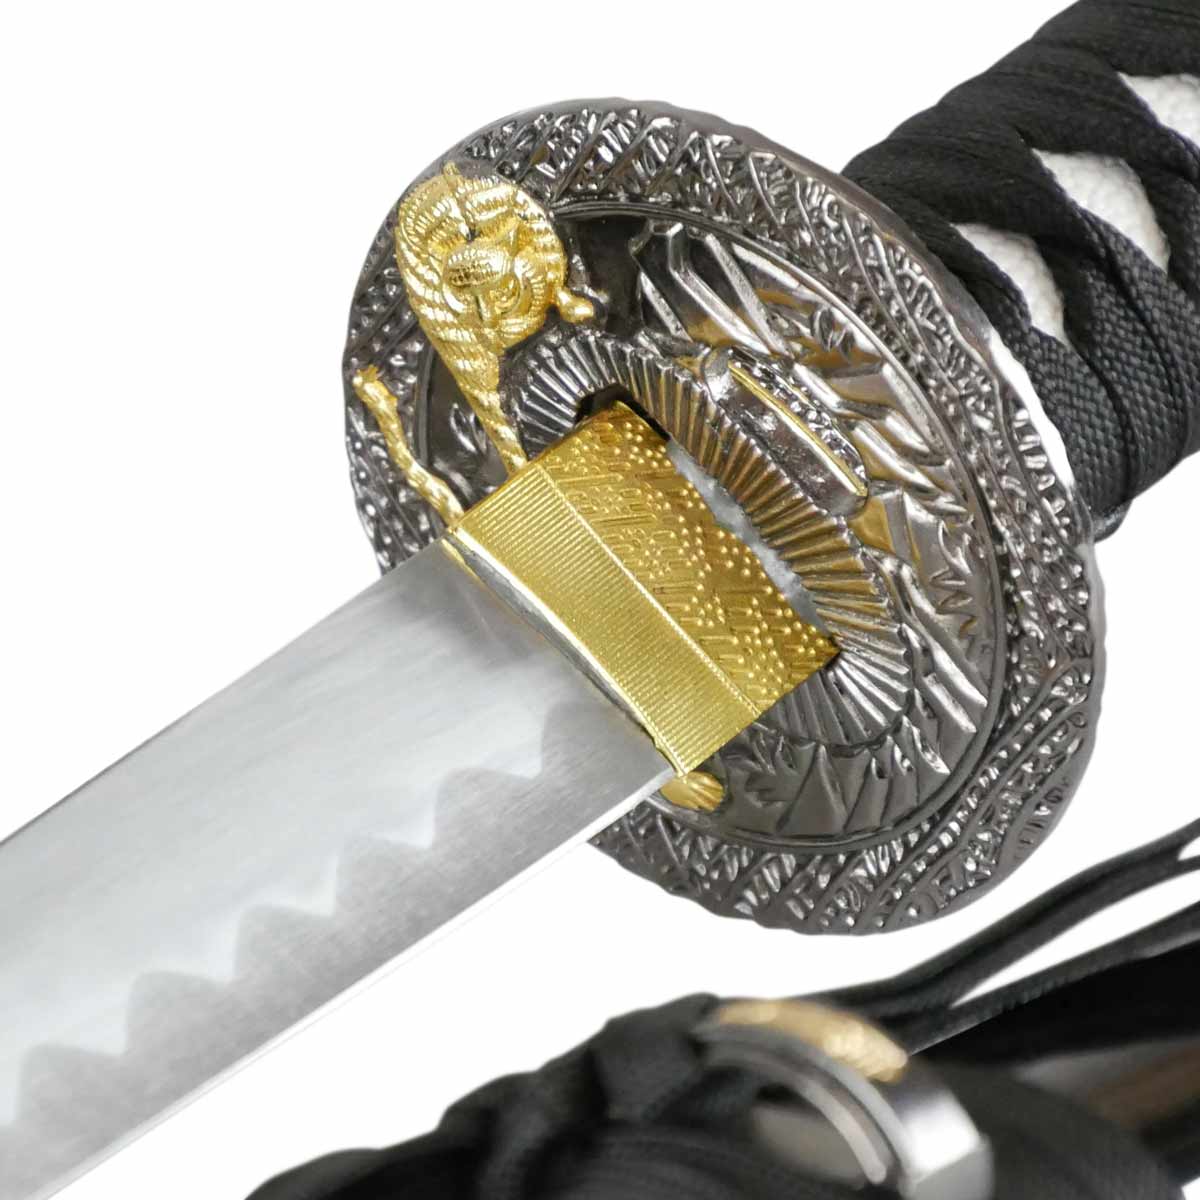 Epic Swords Katana Black Tiger mit stumpfer Klinge inklusive Schwertständer und Zubehör von Epic Swords